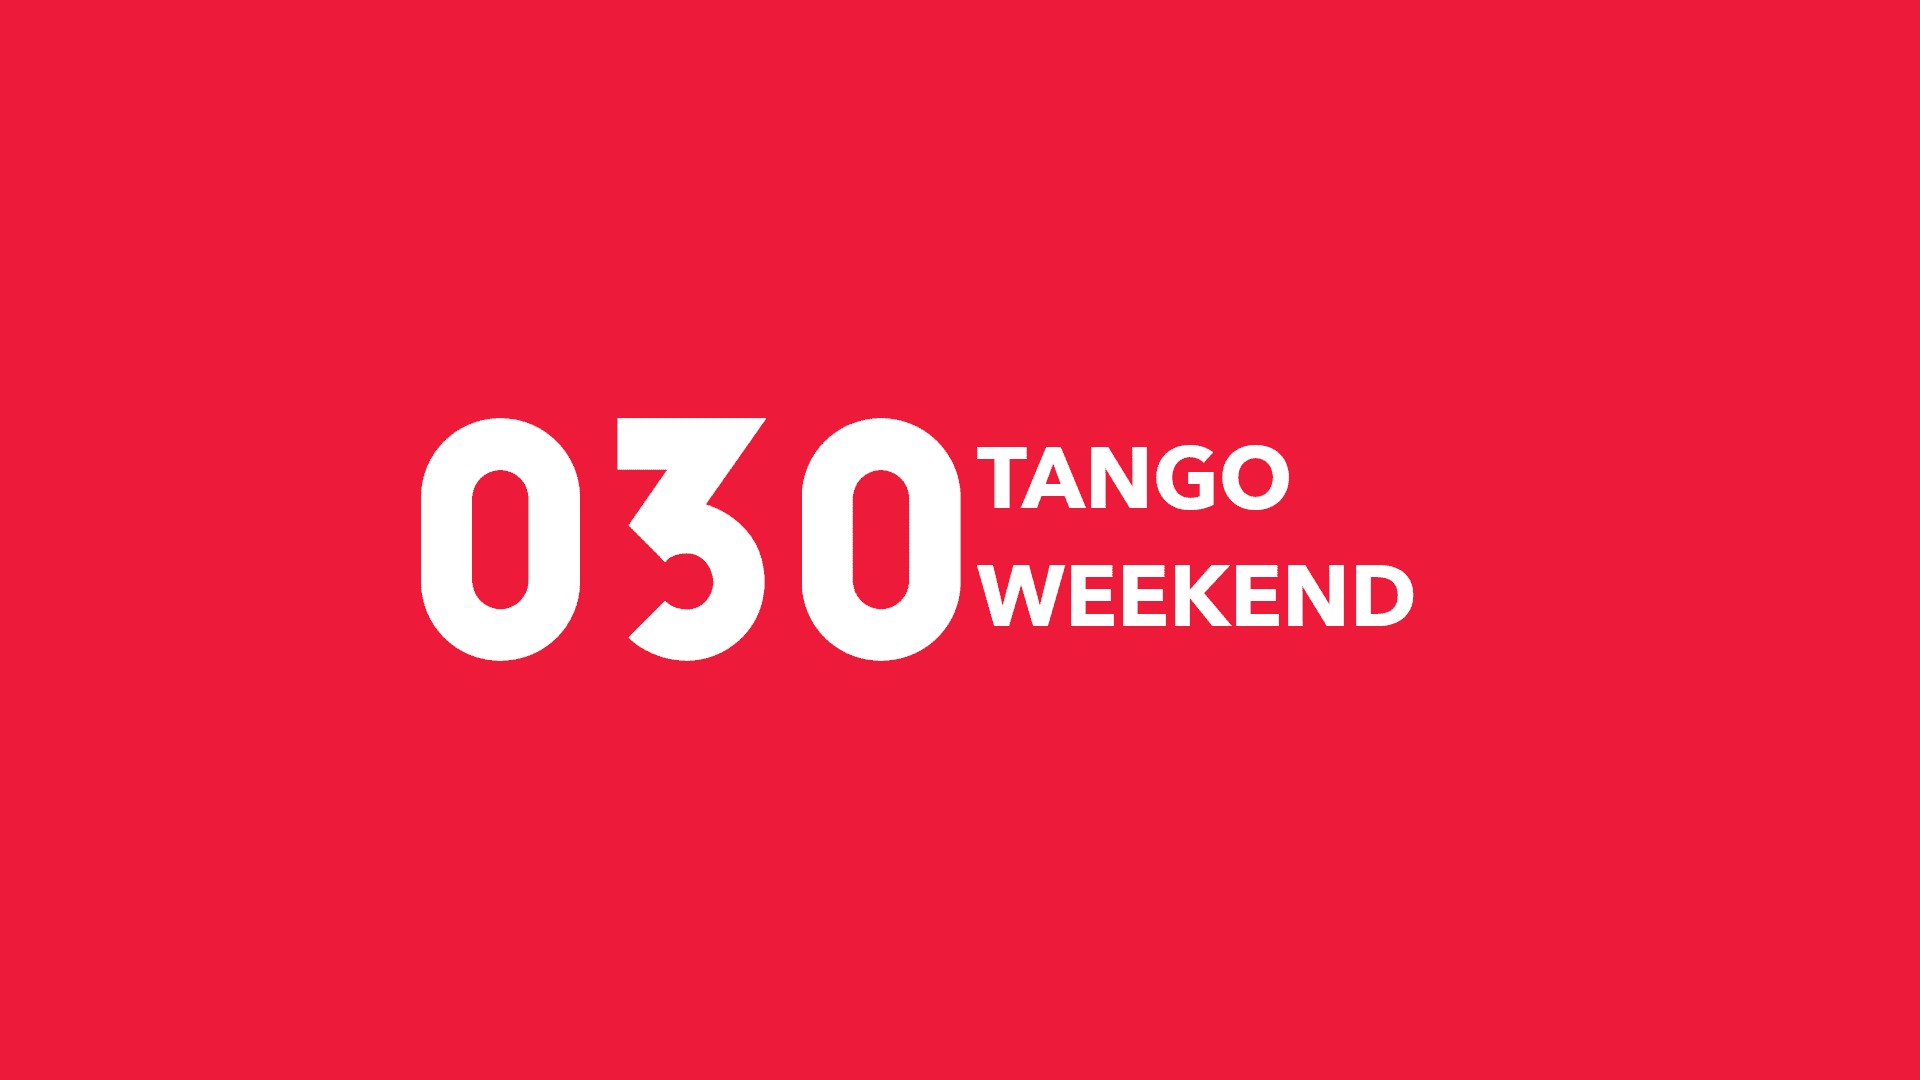 Tango Weekend